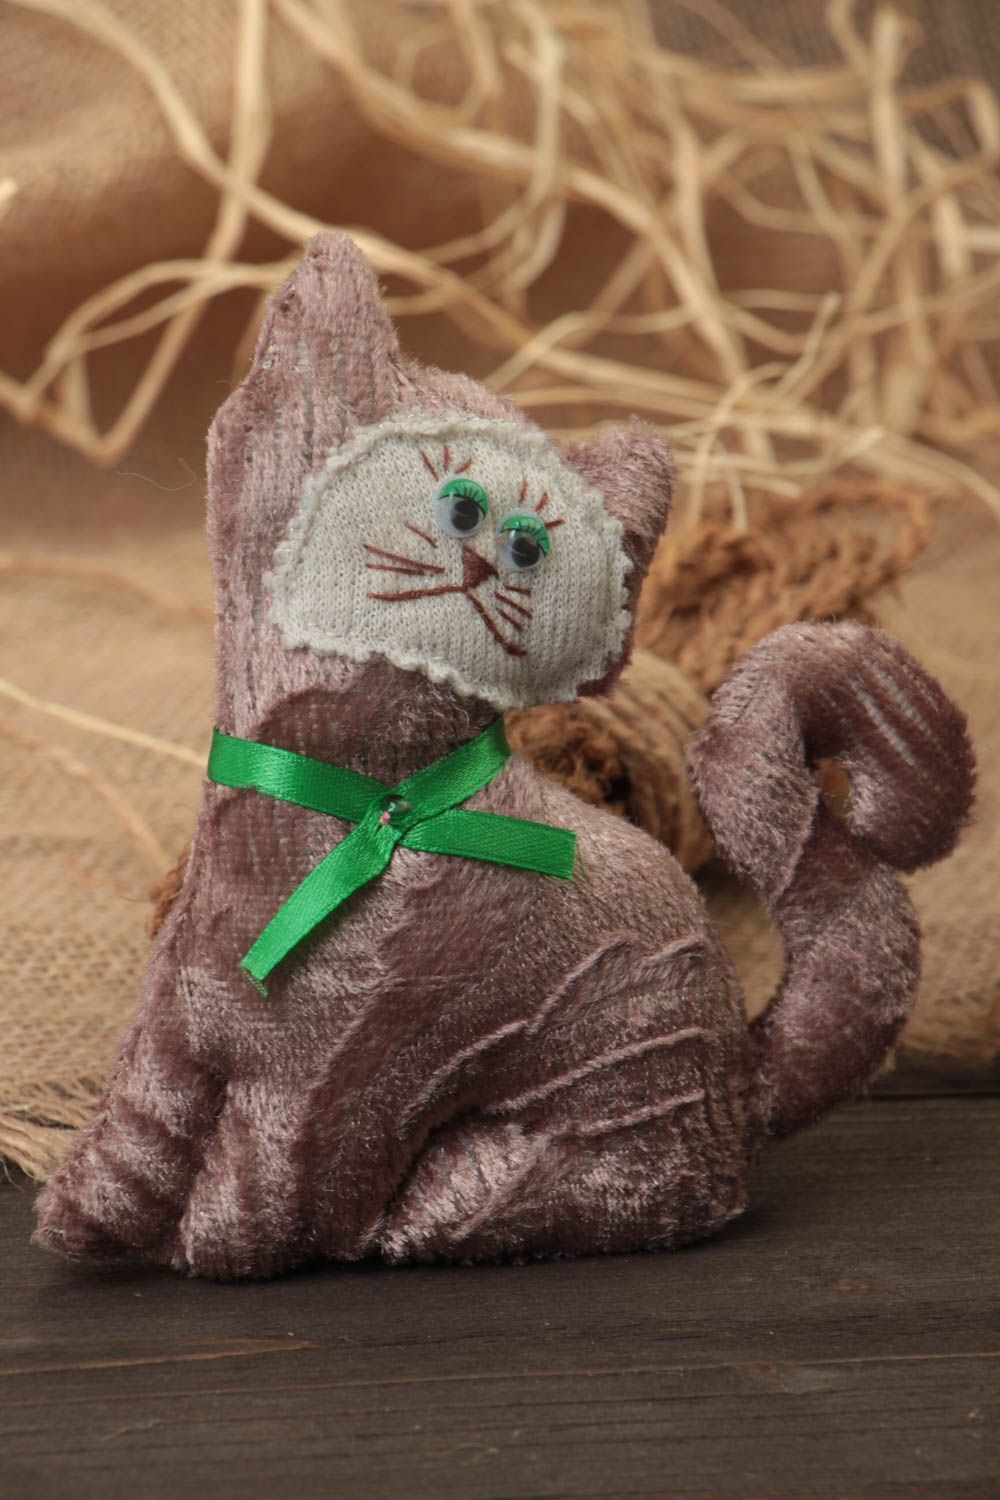 Textil Kuscheltier Kater aus Wolle weich bunt handmade Spielzeug für Kinder foto 1